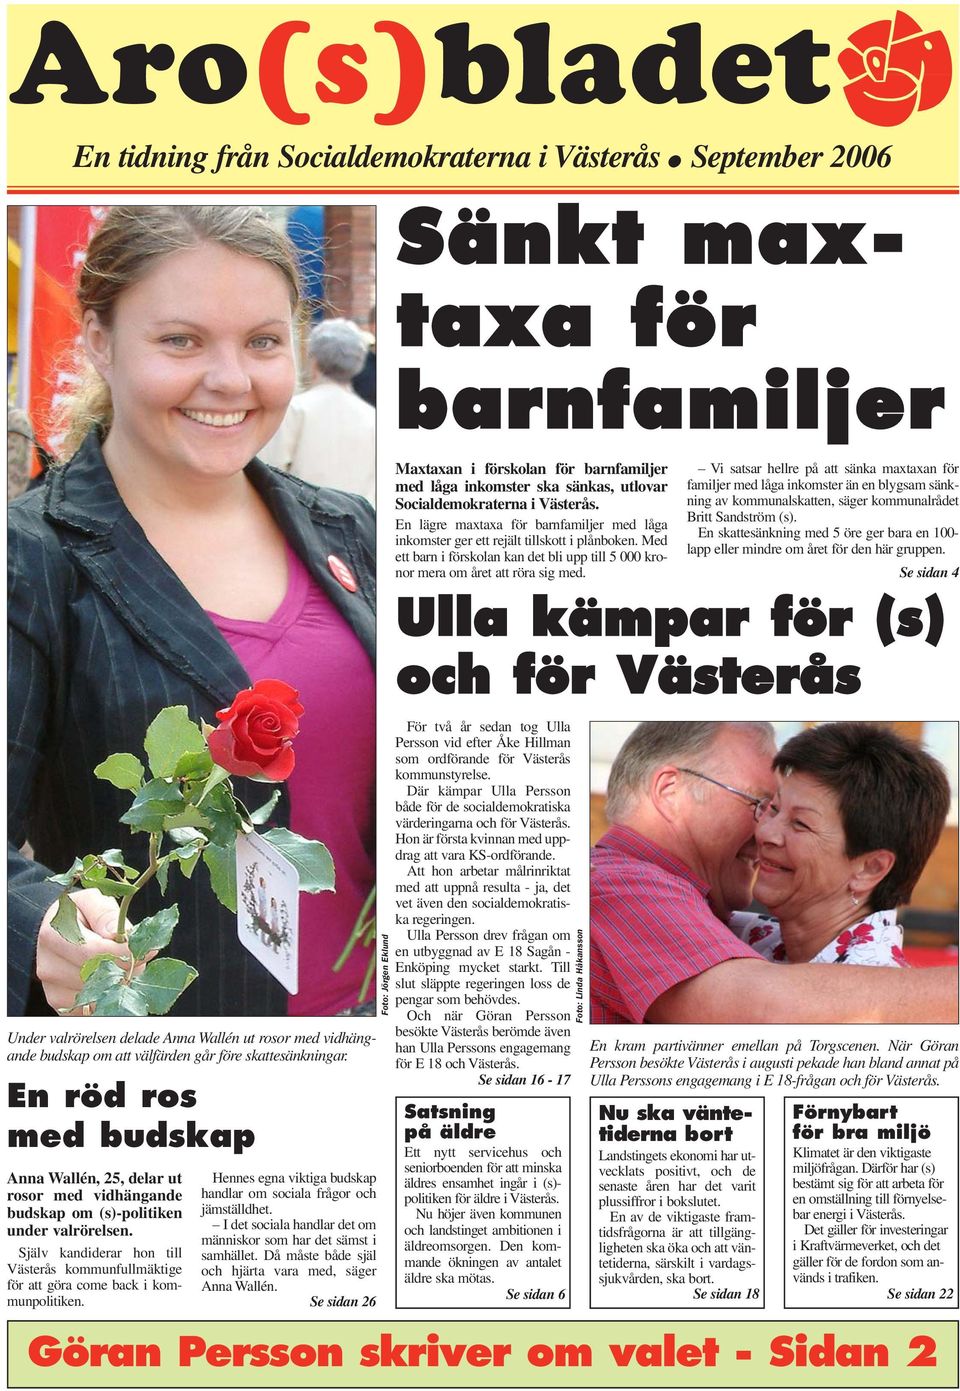 Själv kandiderar hon till Västerås kommunfullmäktige för att göra come back i kommunpolitiken. Hennes egna viktiga budskap handlar om sociala frågor och jämställdhet.